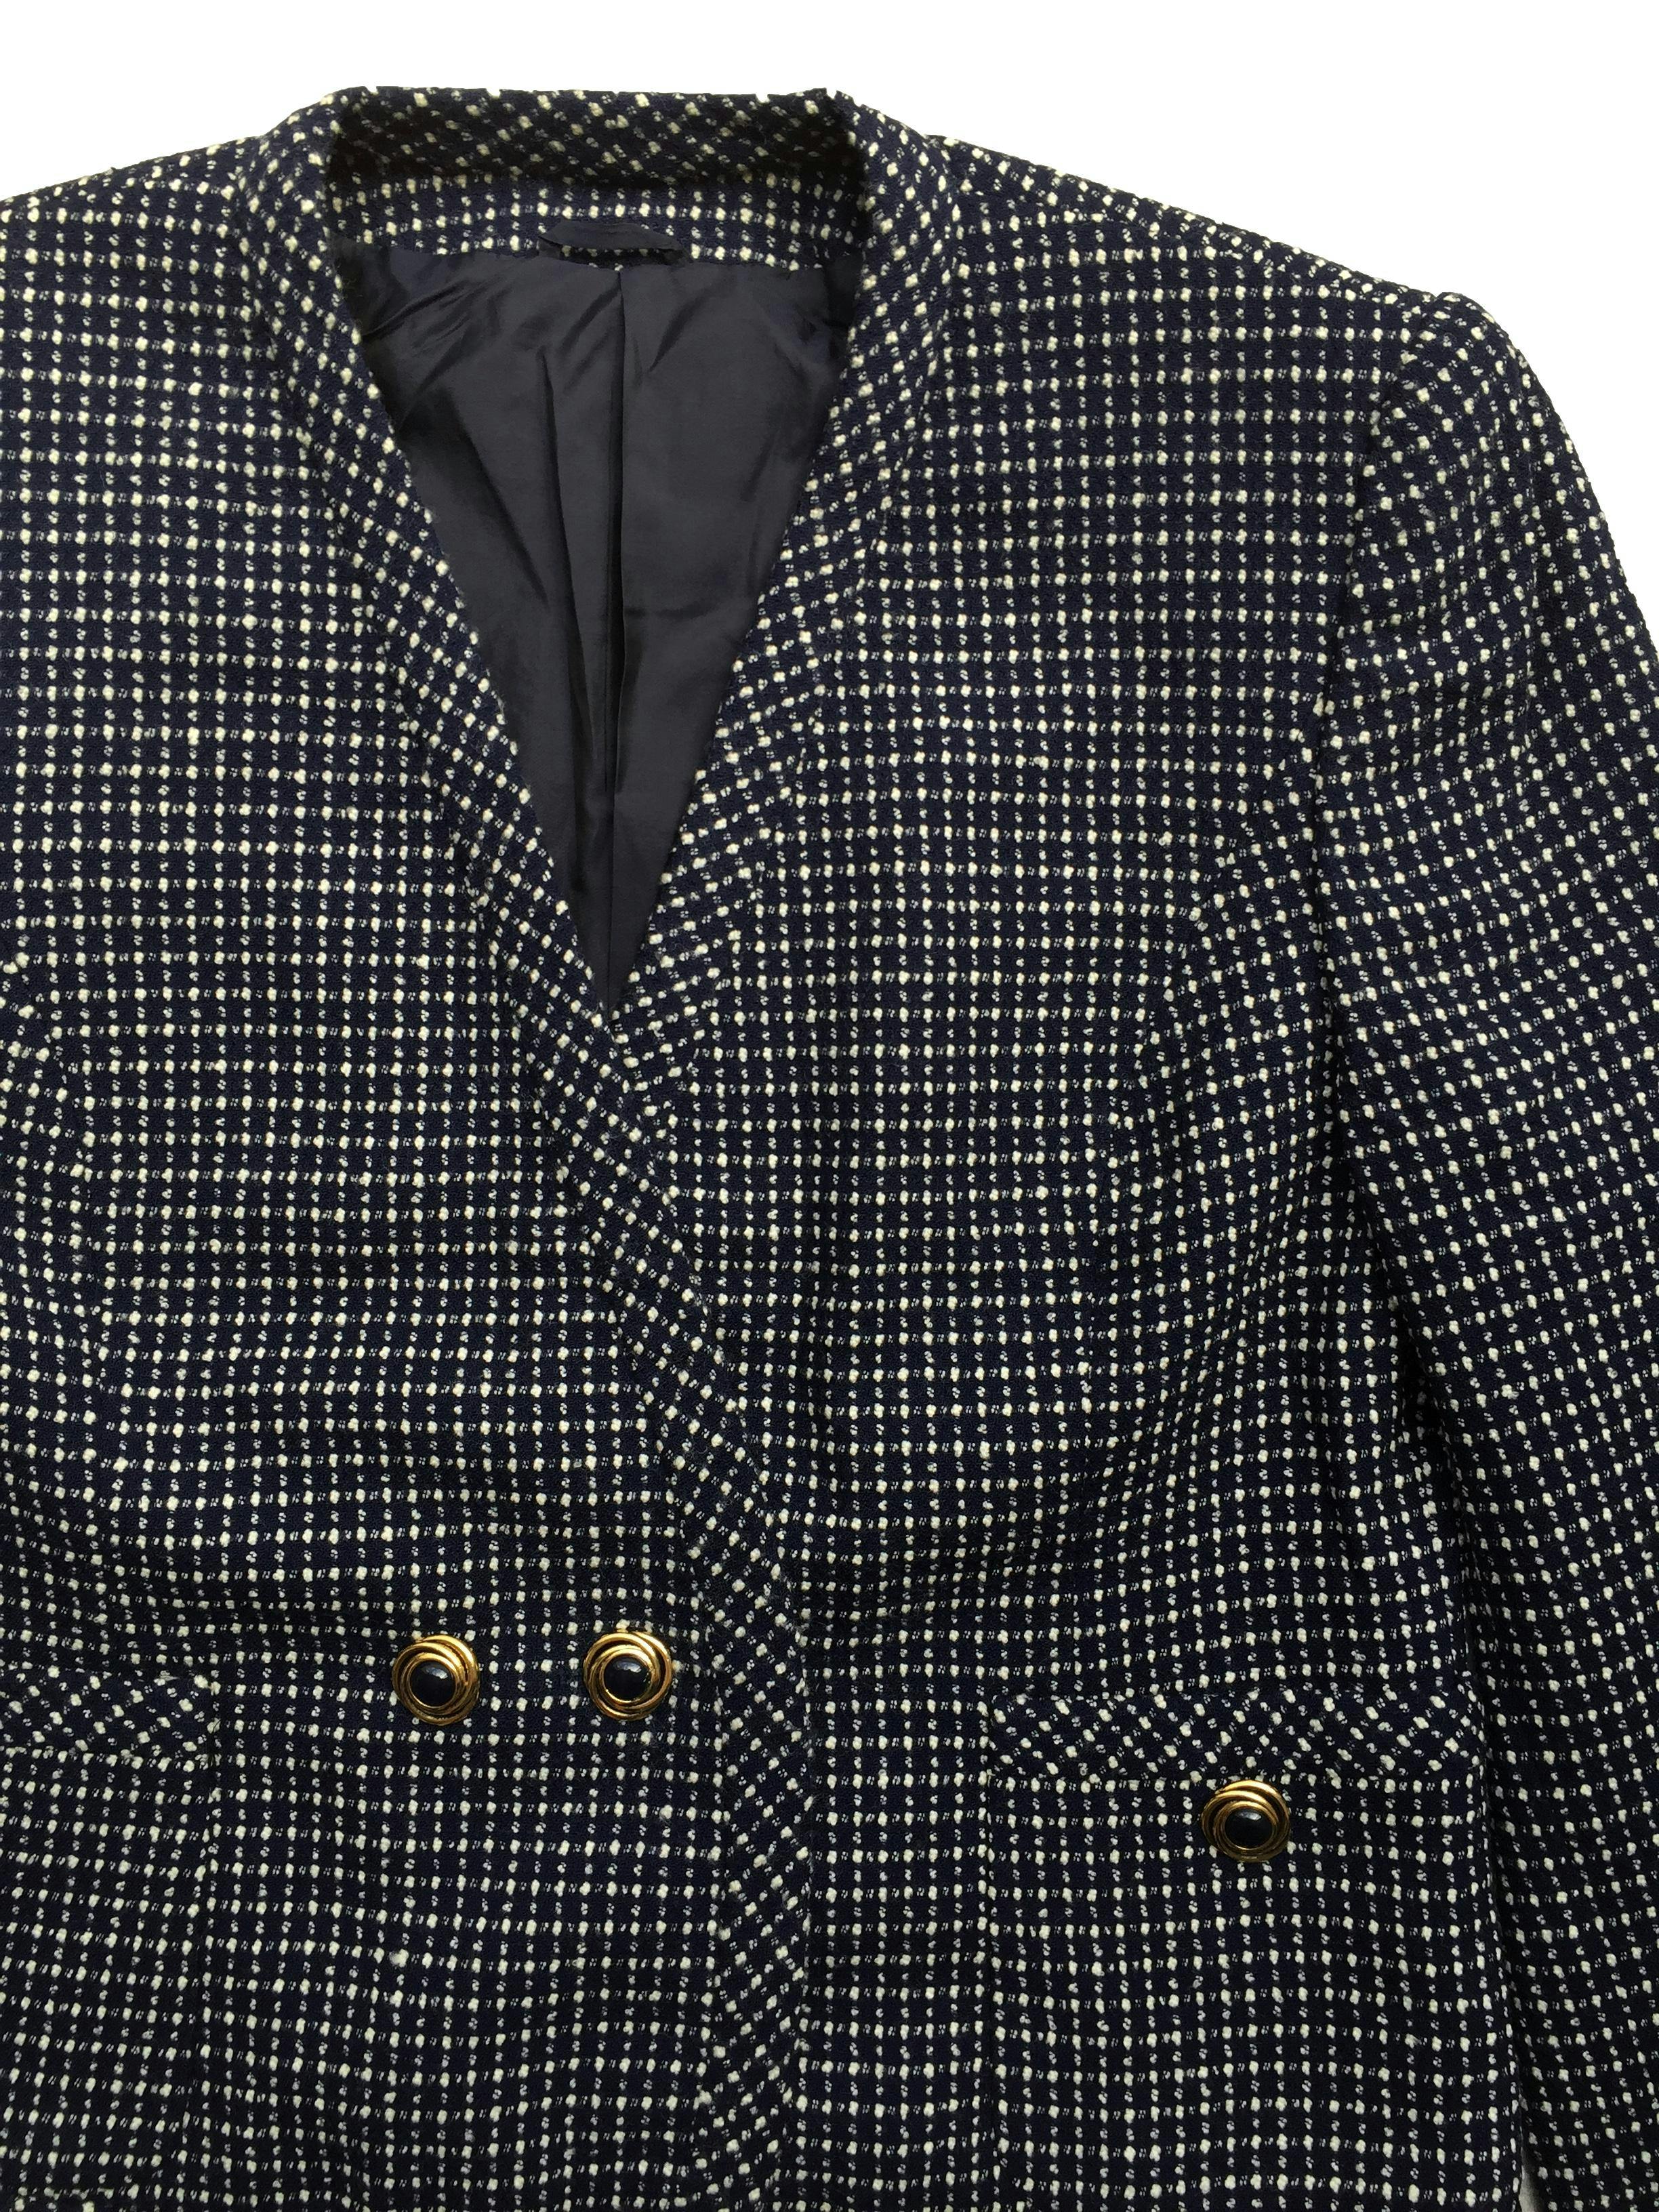 Blazer de tweed azul con forro, bolsillos y botones dorados.Busto 106cm, Largo 56cm 